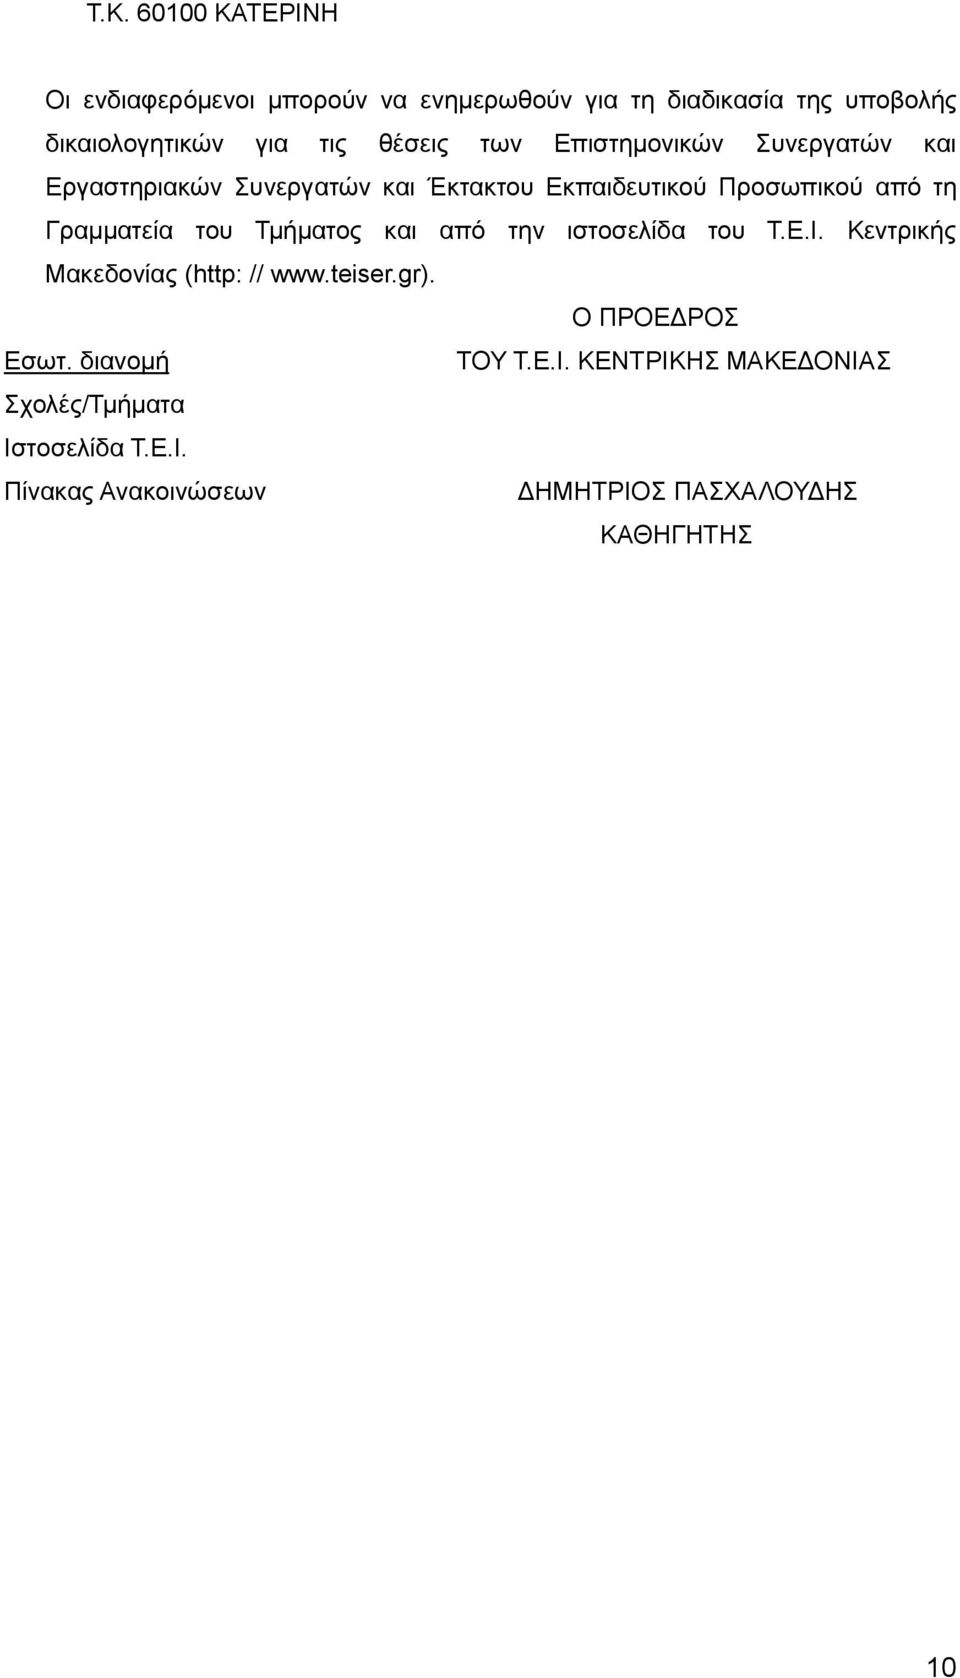 Γραμματεία του Τμήματος και από την ιστοσελίδα του Τ.Ε.Ι. Κεντρικής Μακεδονίας (http: // www.teiser.gr).